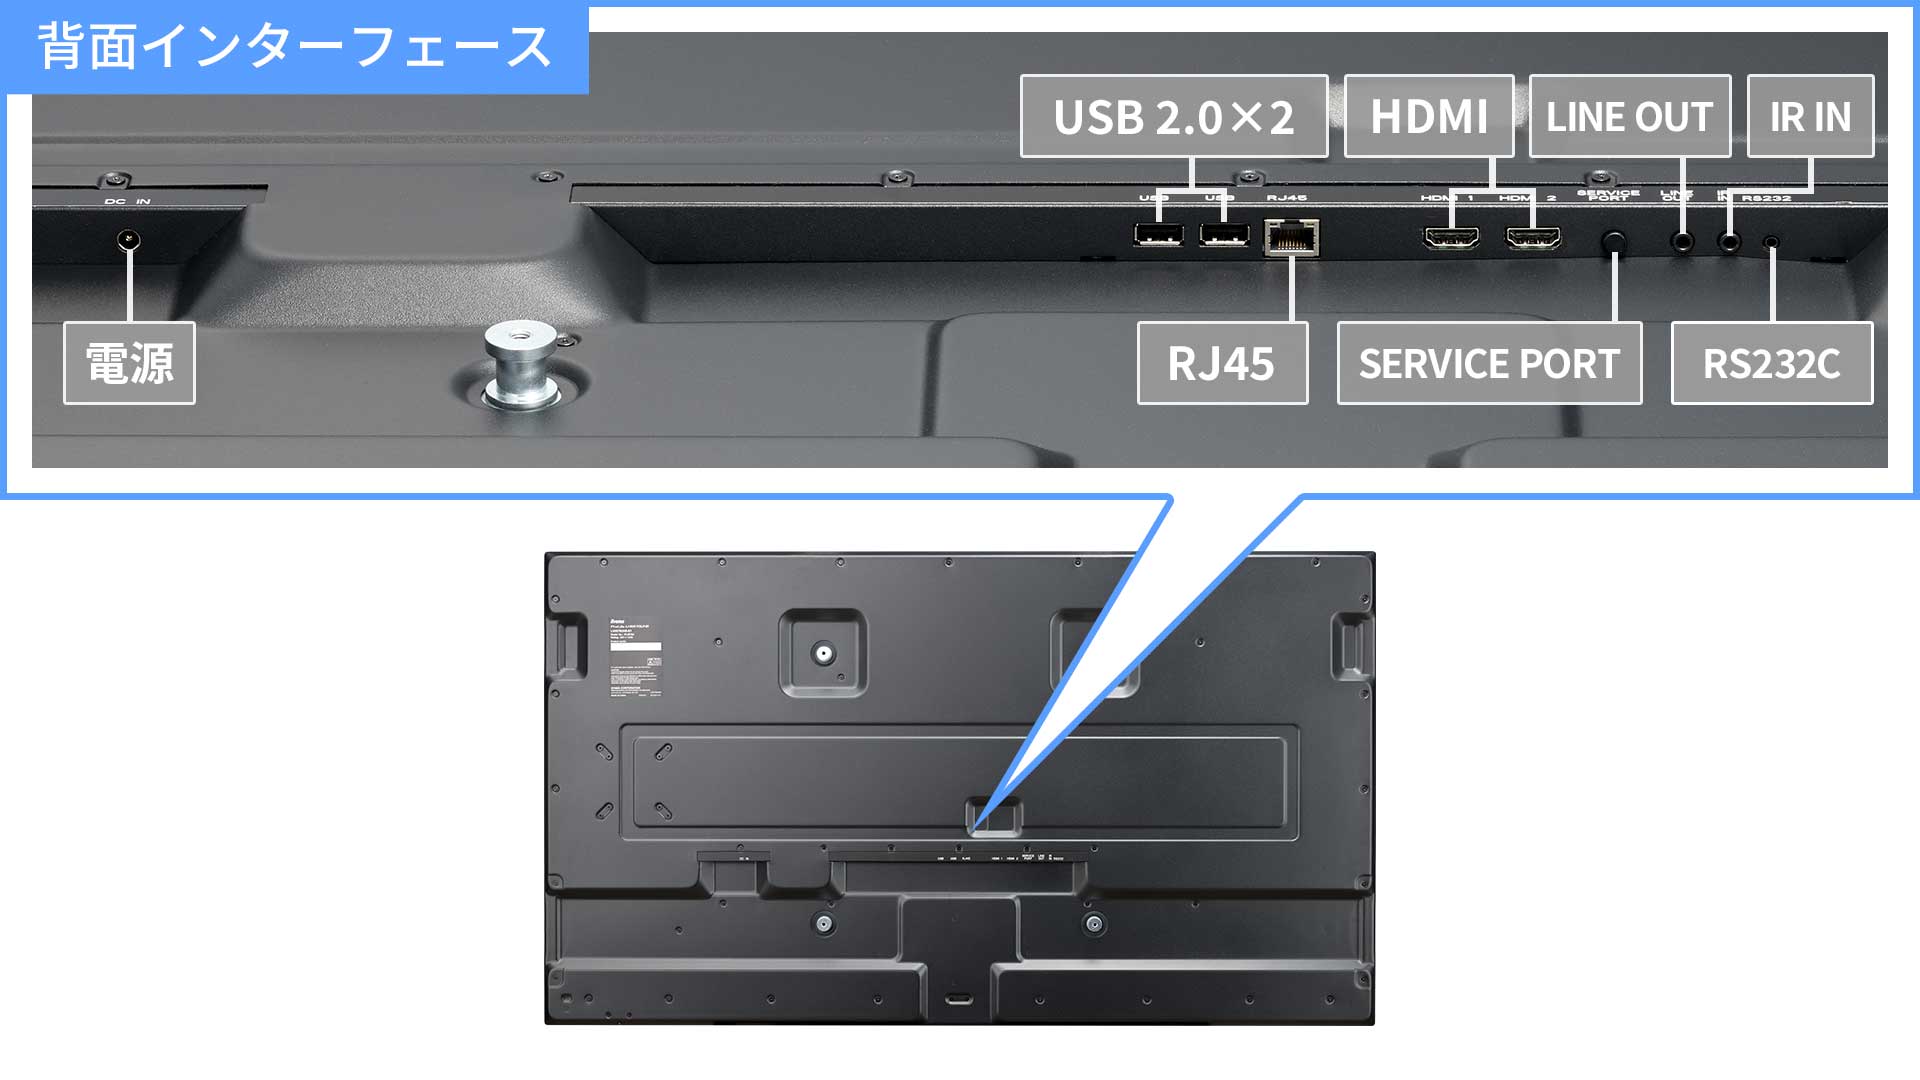 HDMI端子×2を搭載。2台のPCをつないで切り替えて使用可